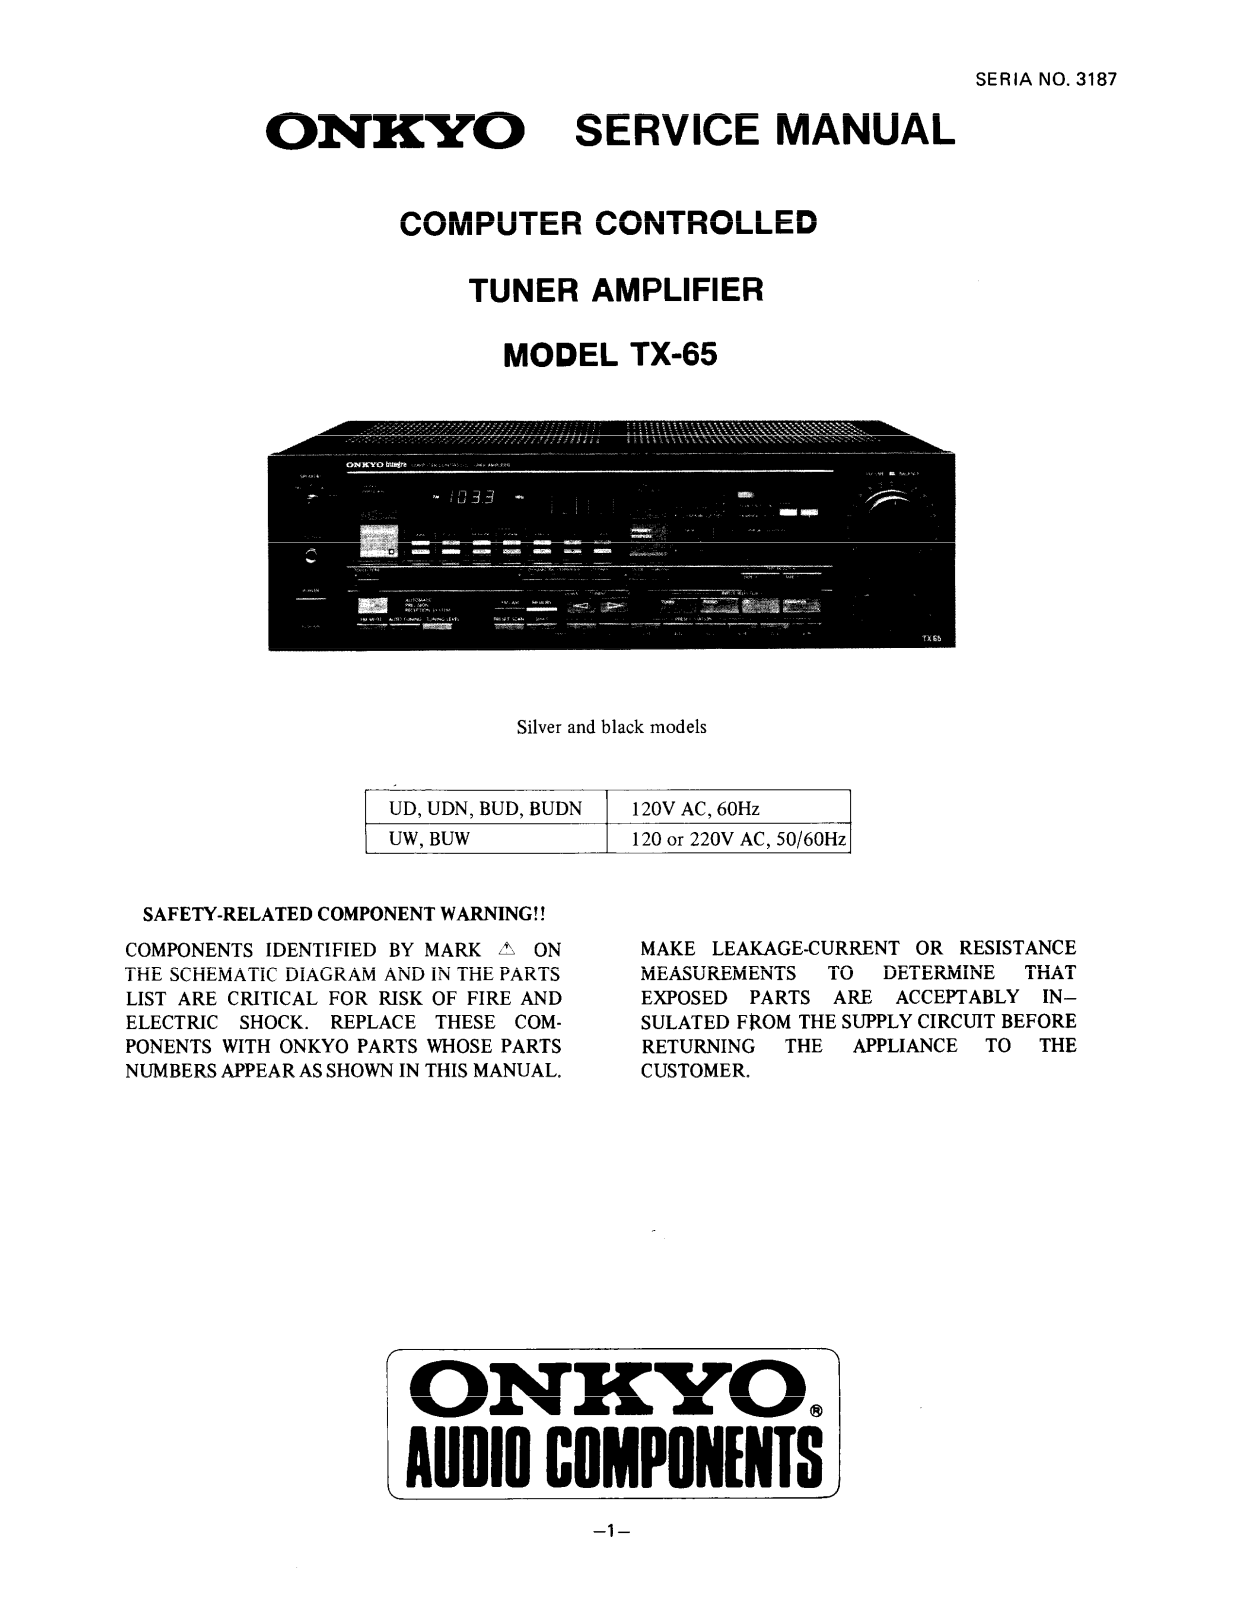 Onkyo TX-65 Service manual